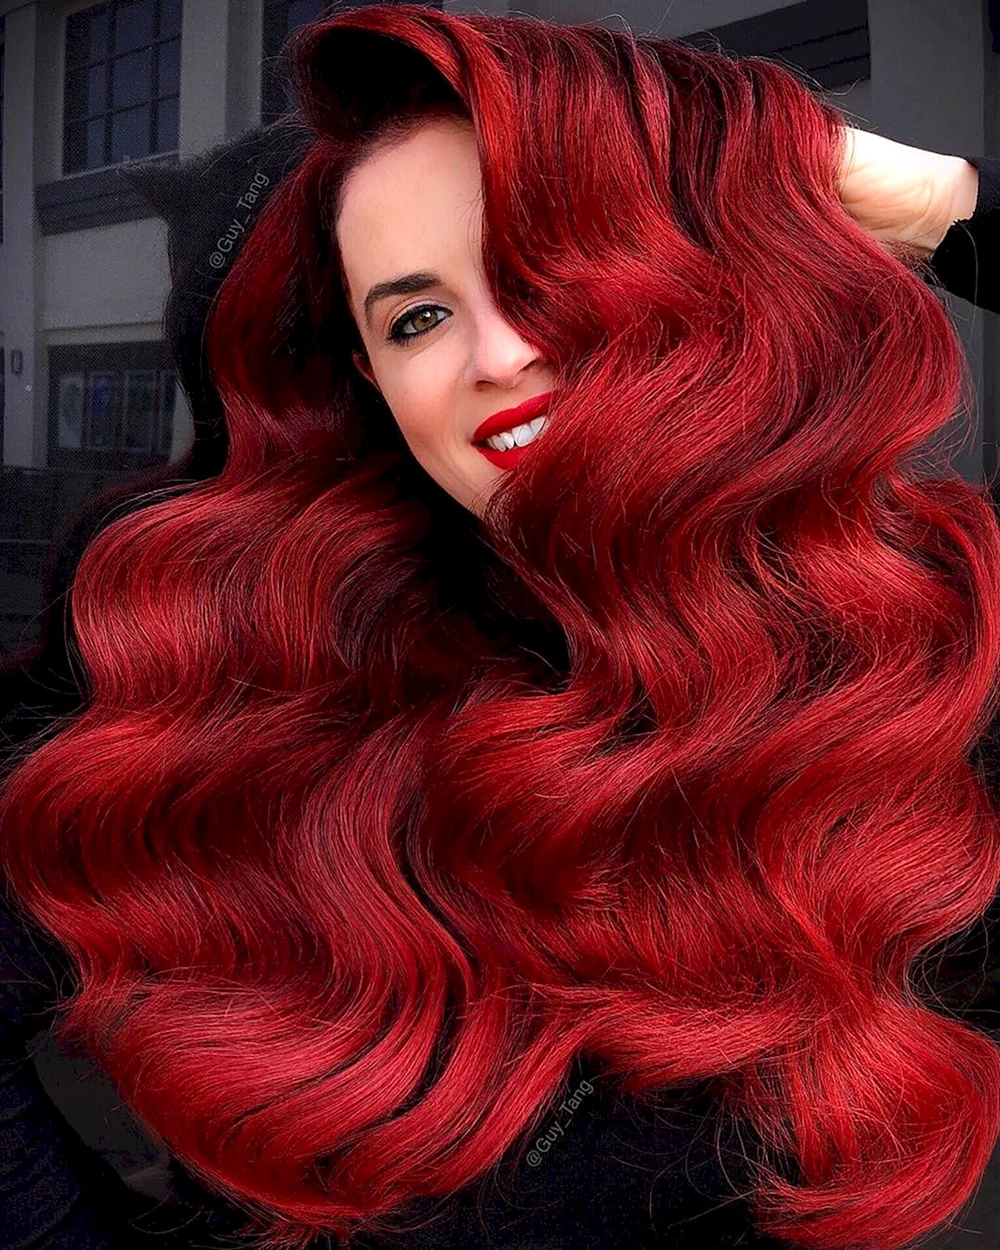 Red hair палитра